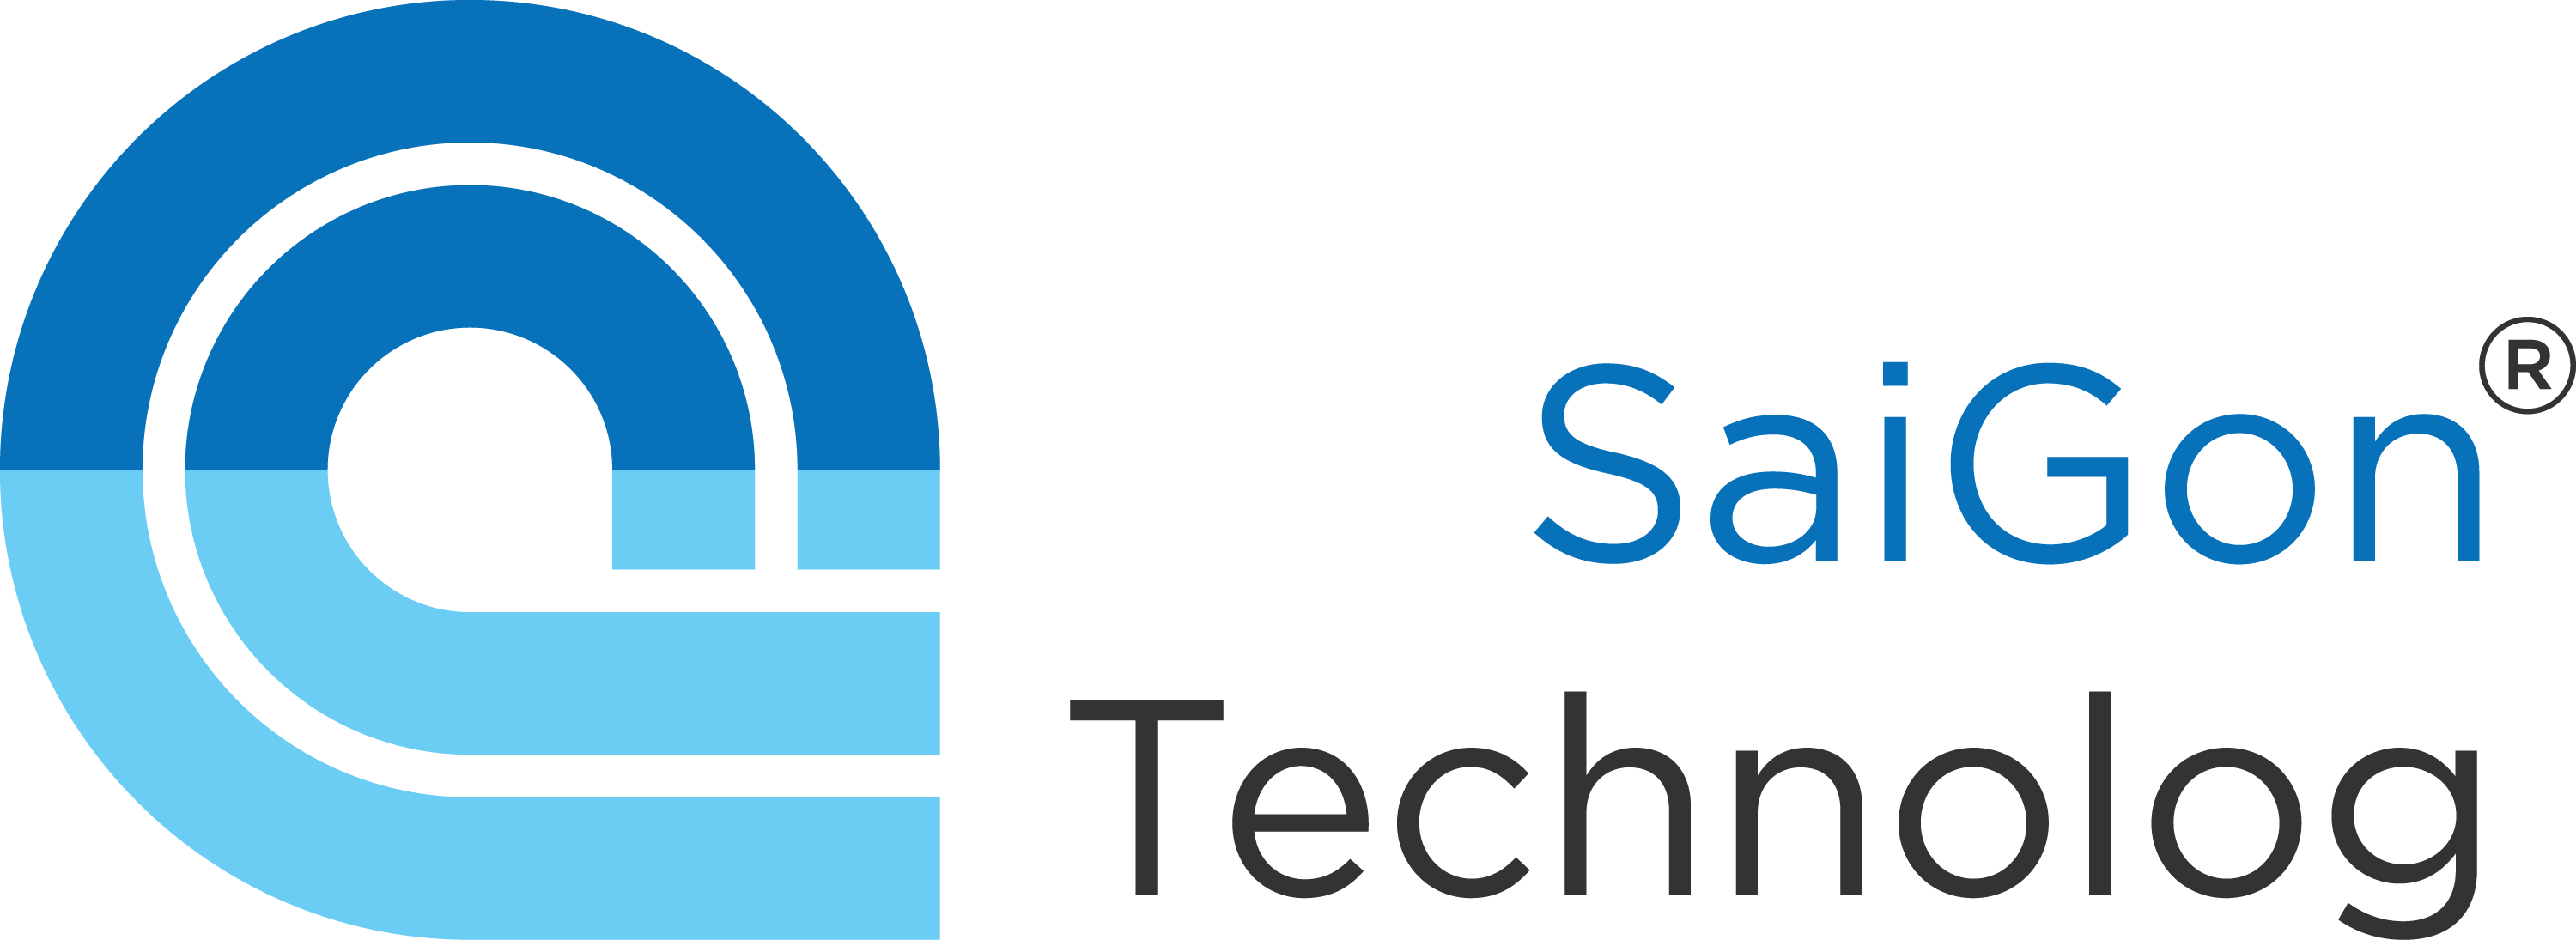 Saigon Technolog